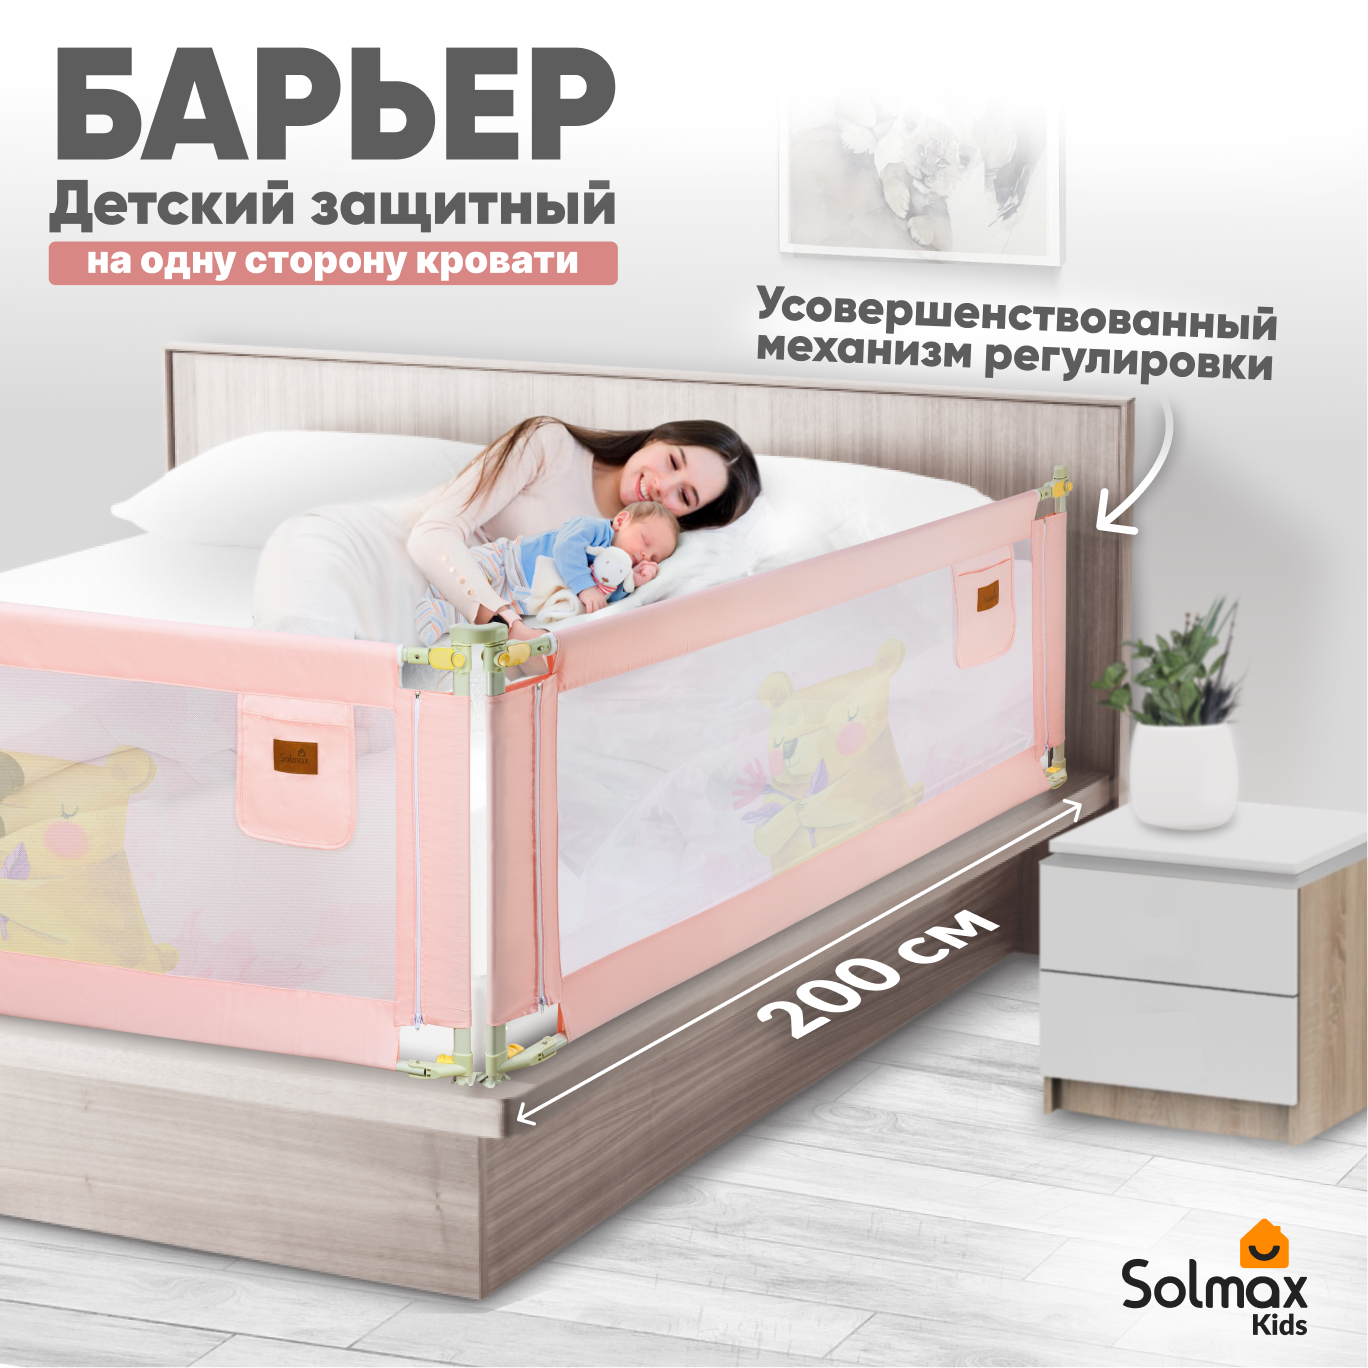 Барьер защитный для кровати от падений SOLMAX розовы бортик в кроватку для малыша 200 см